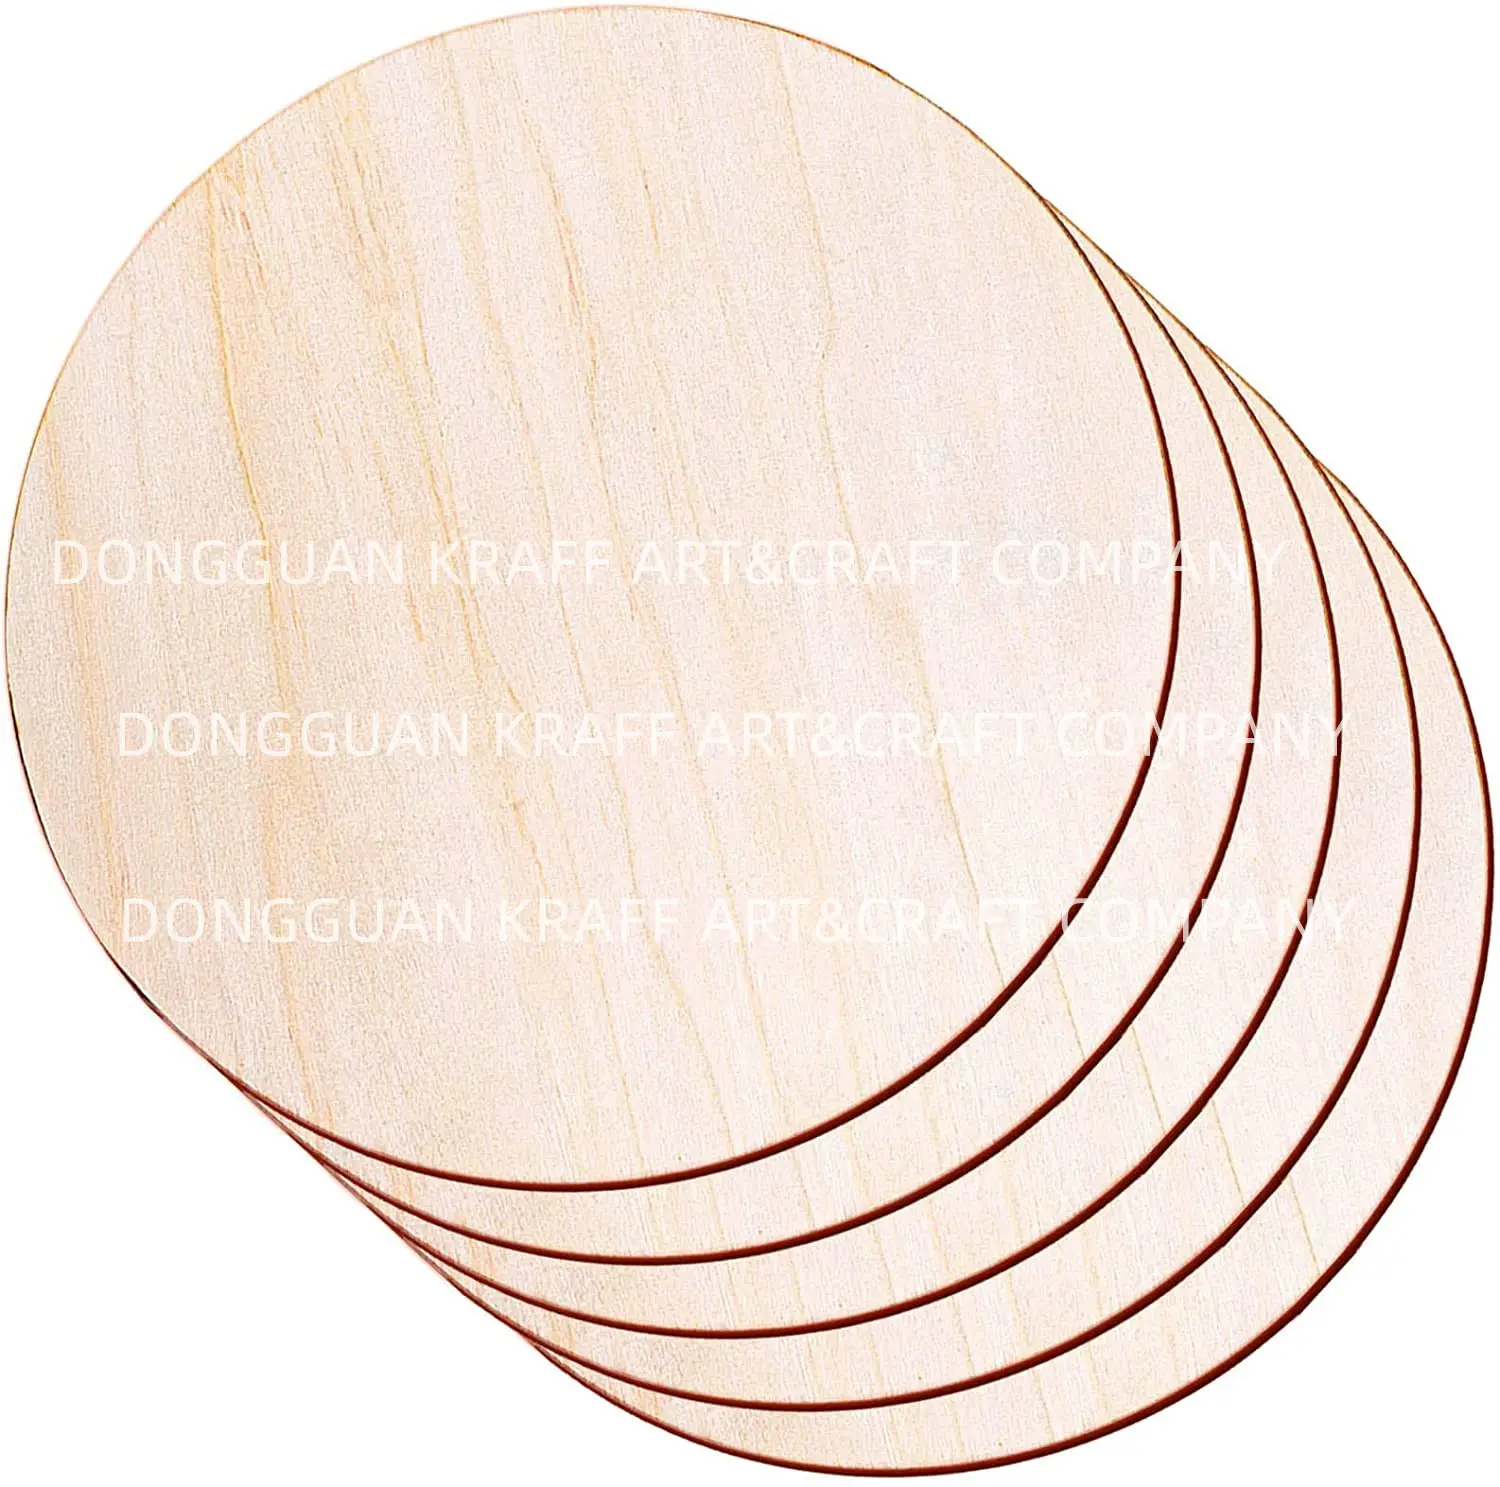 KRAFF Amazon Top Seller pezzi di legna da 12 pollici in legno grezzo non finito fette rotonde cerchi in legno per artigianato